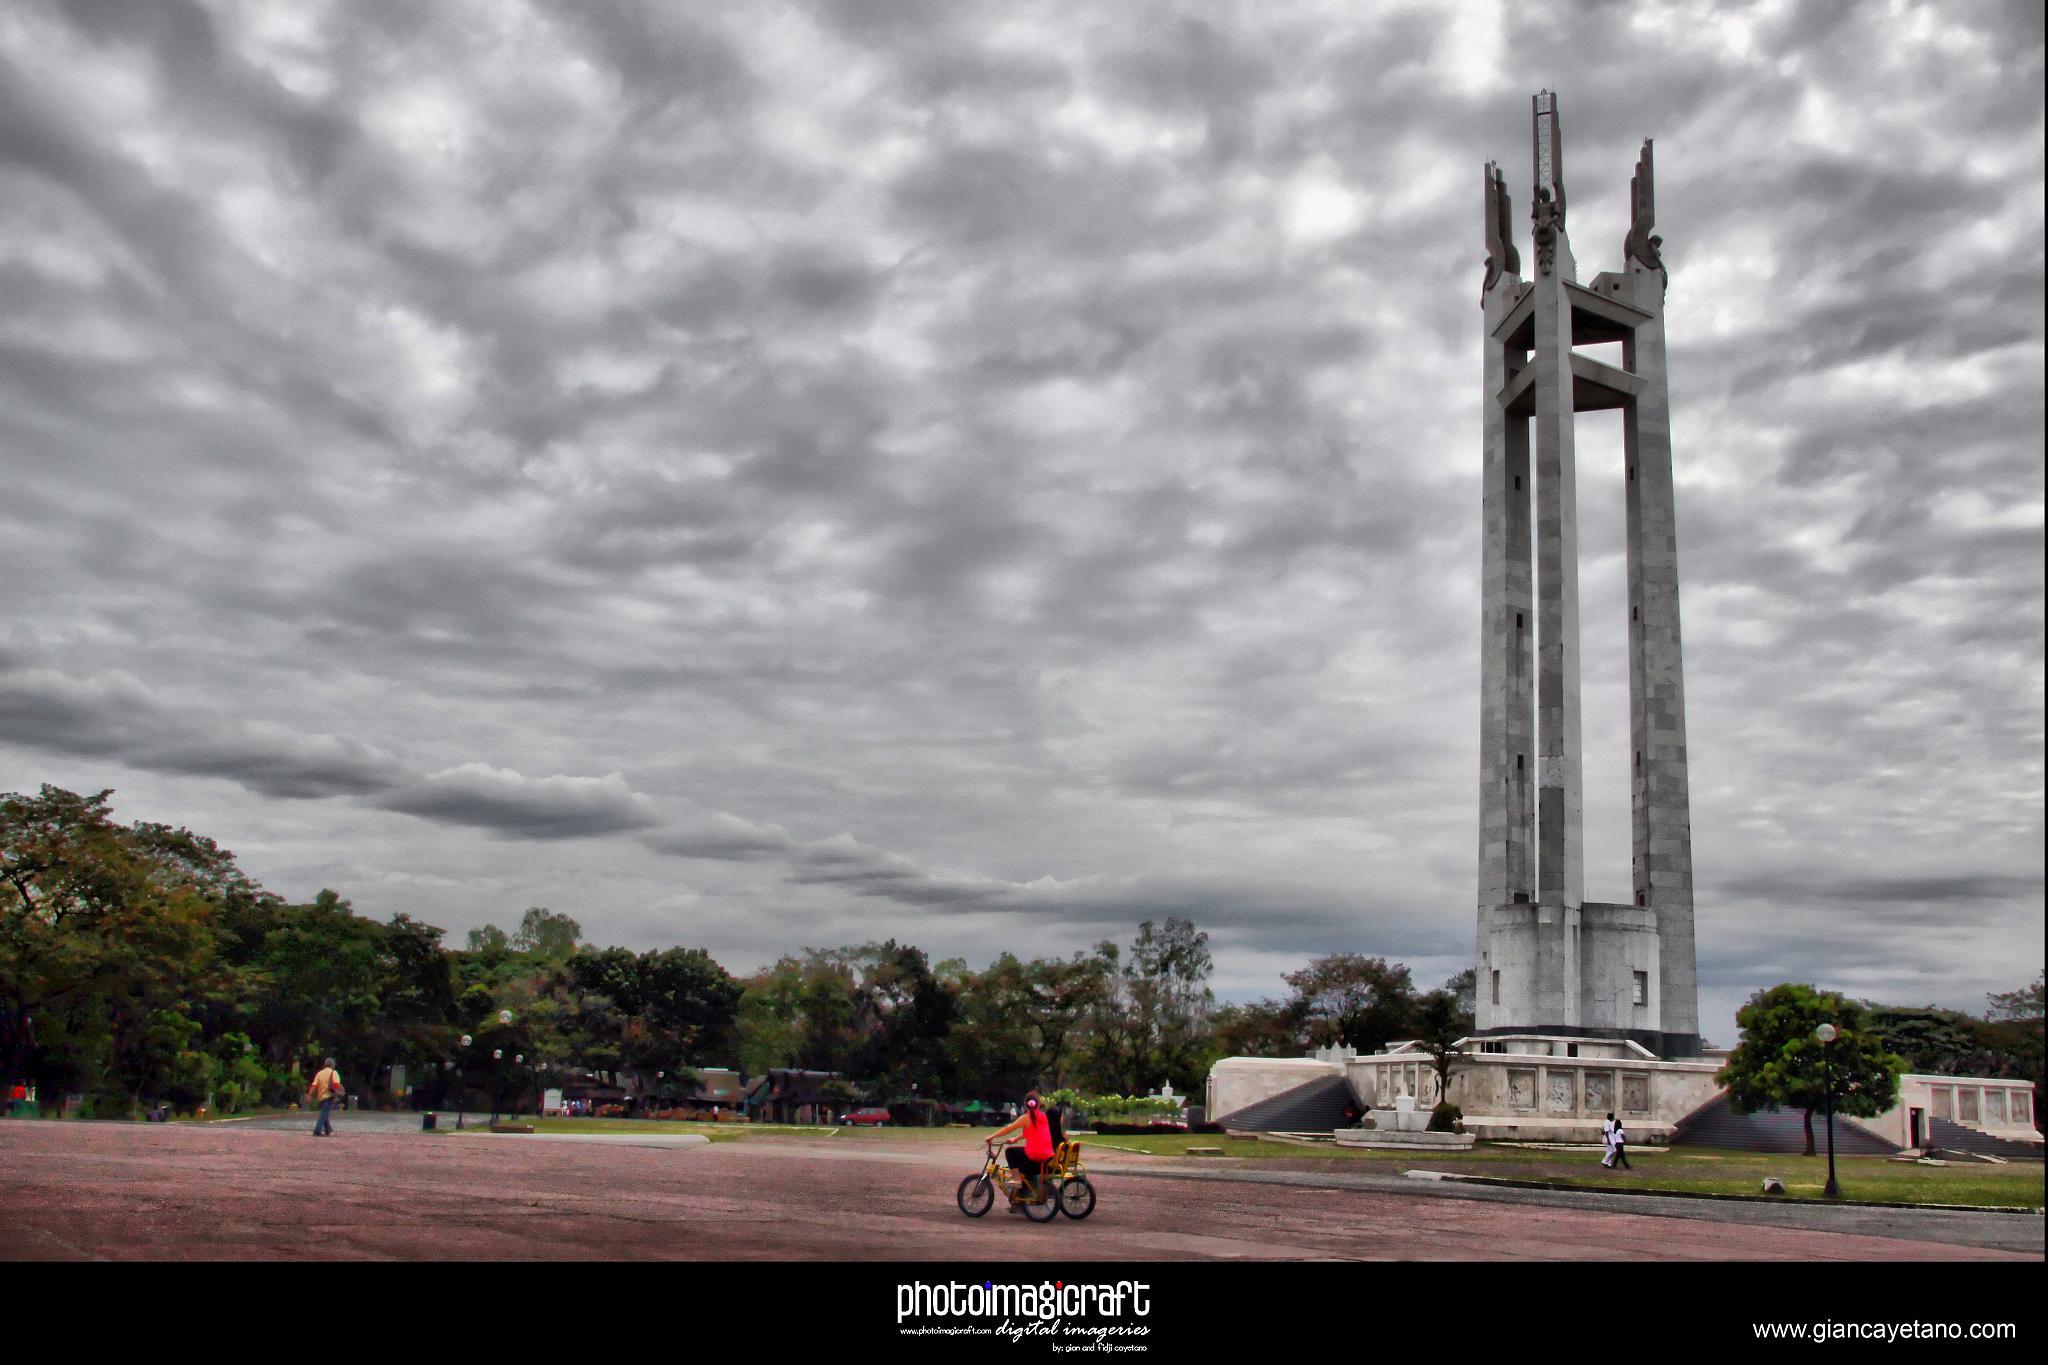 Quezon Memorial Circle: A Famous Historical Park in Quezon City